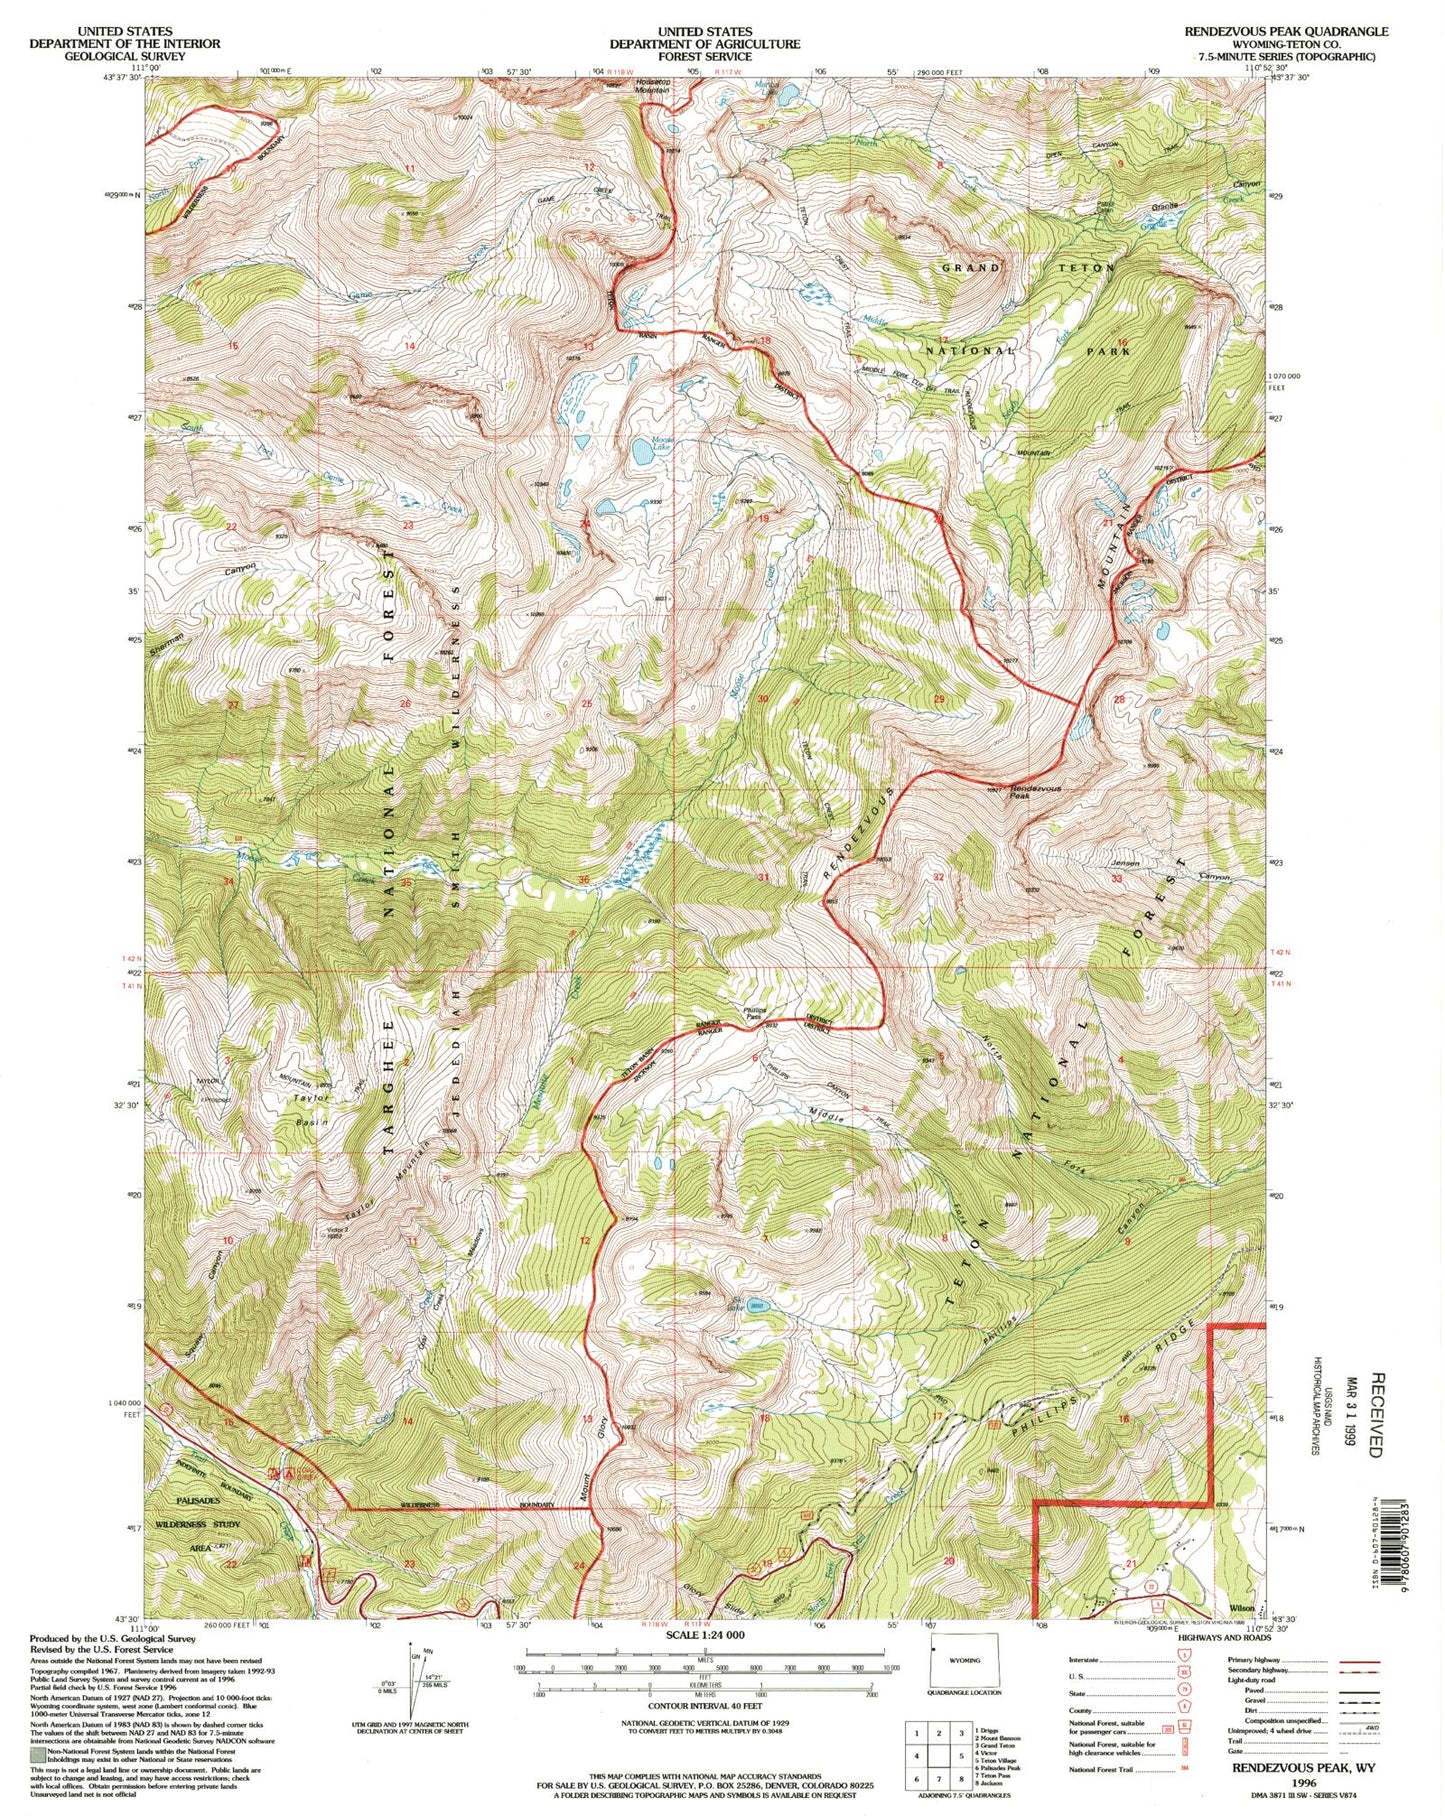 USGS Classic Rendezvous Peak Wyoming 7.5'x7.5' Topo Map Image